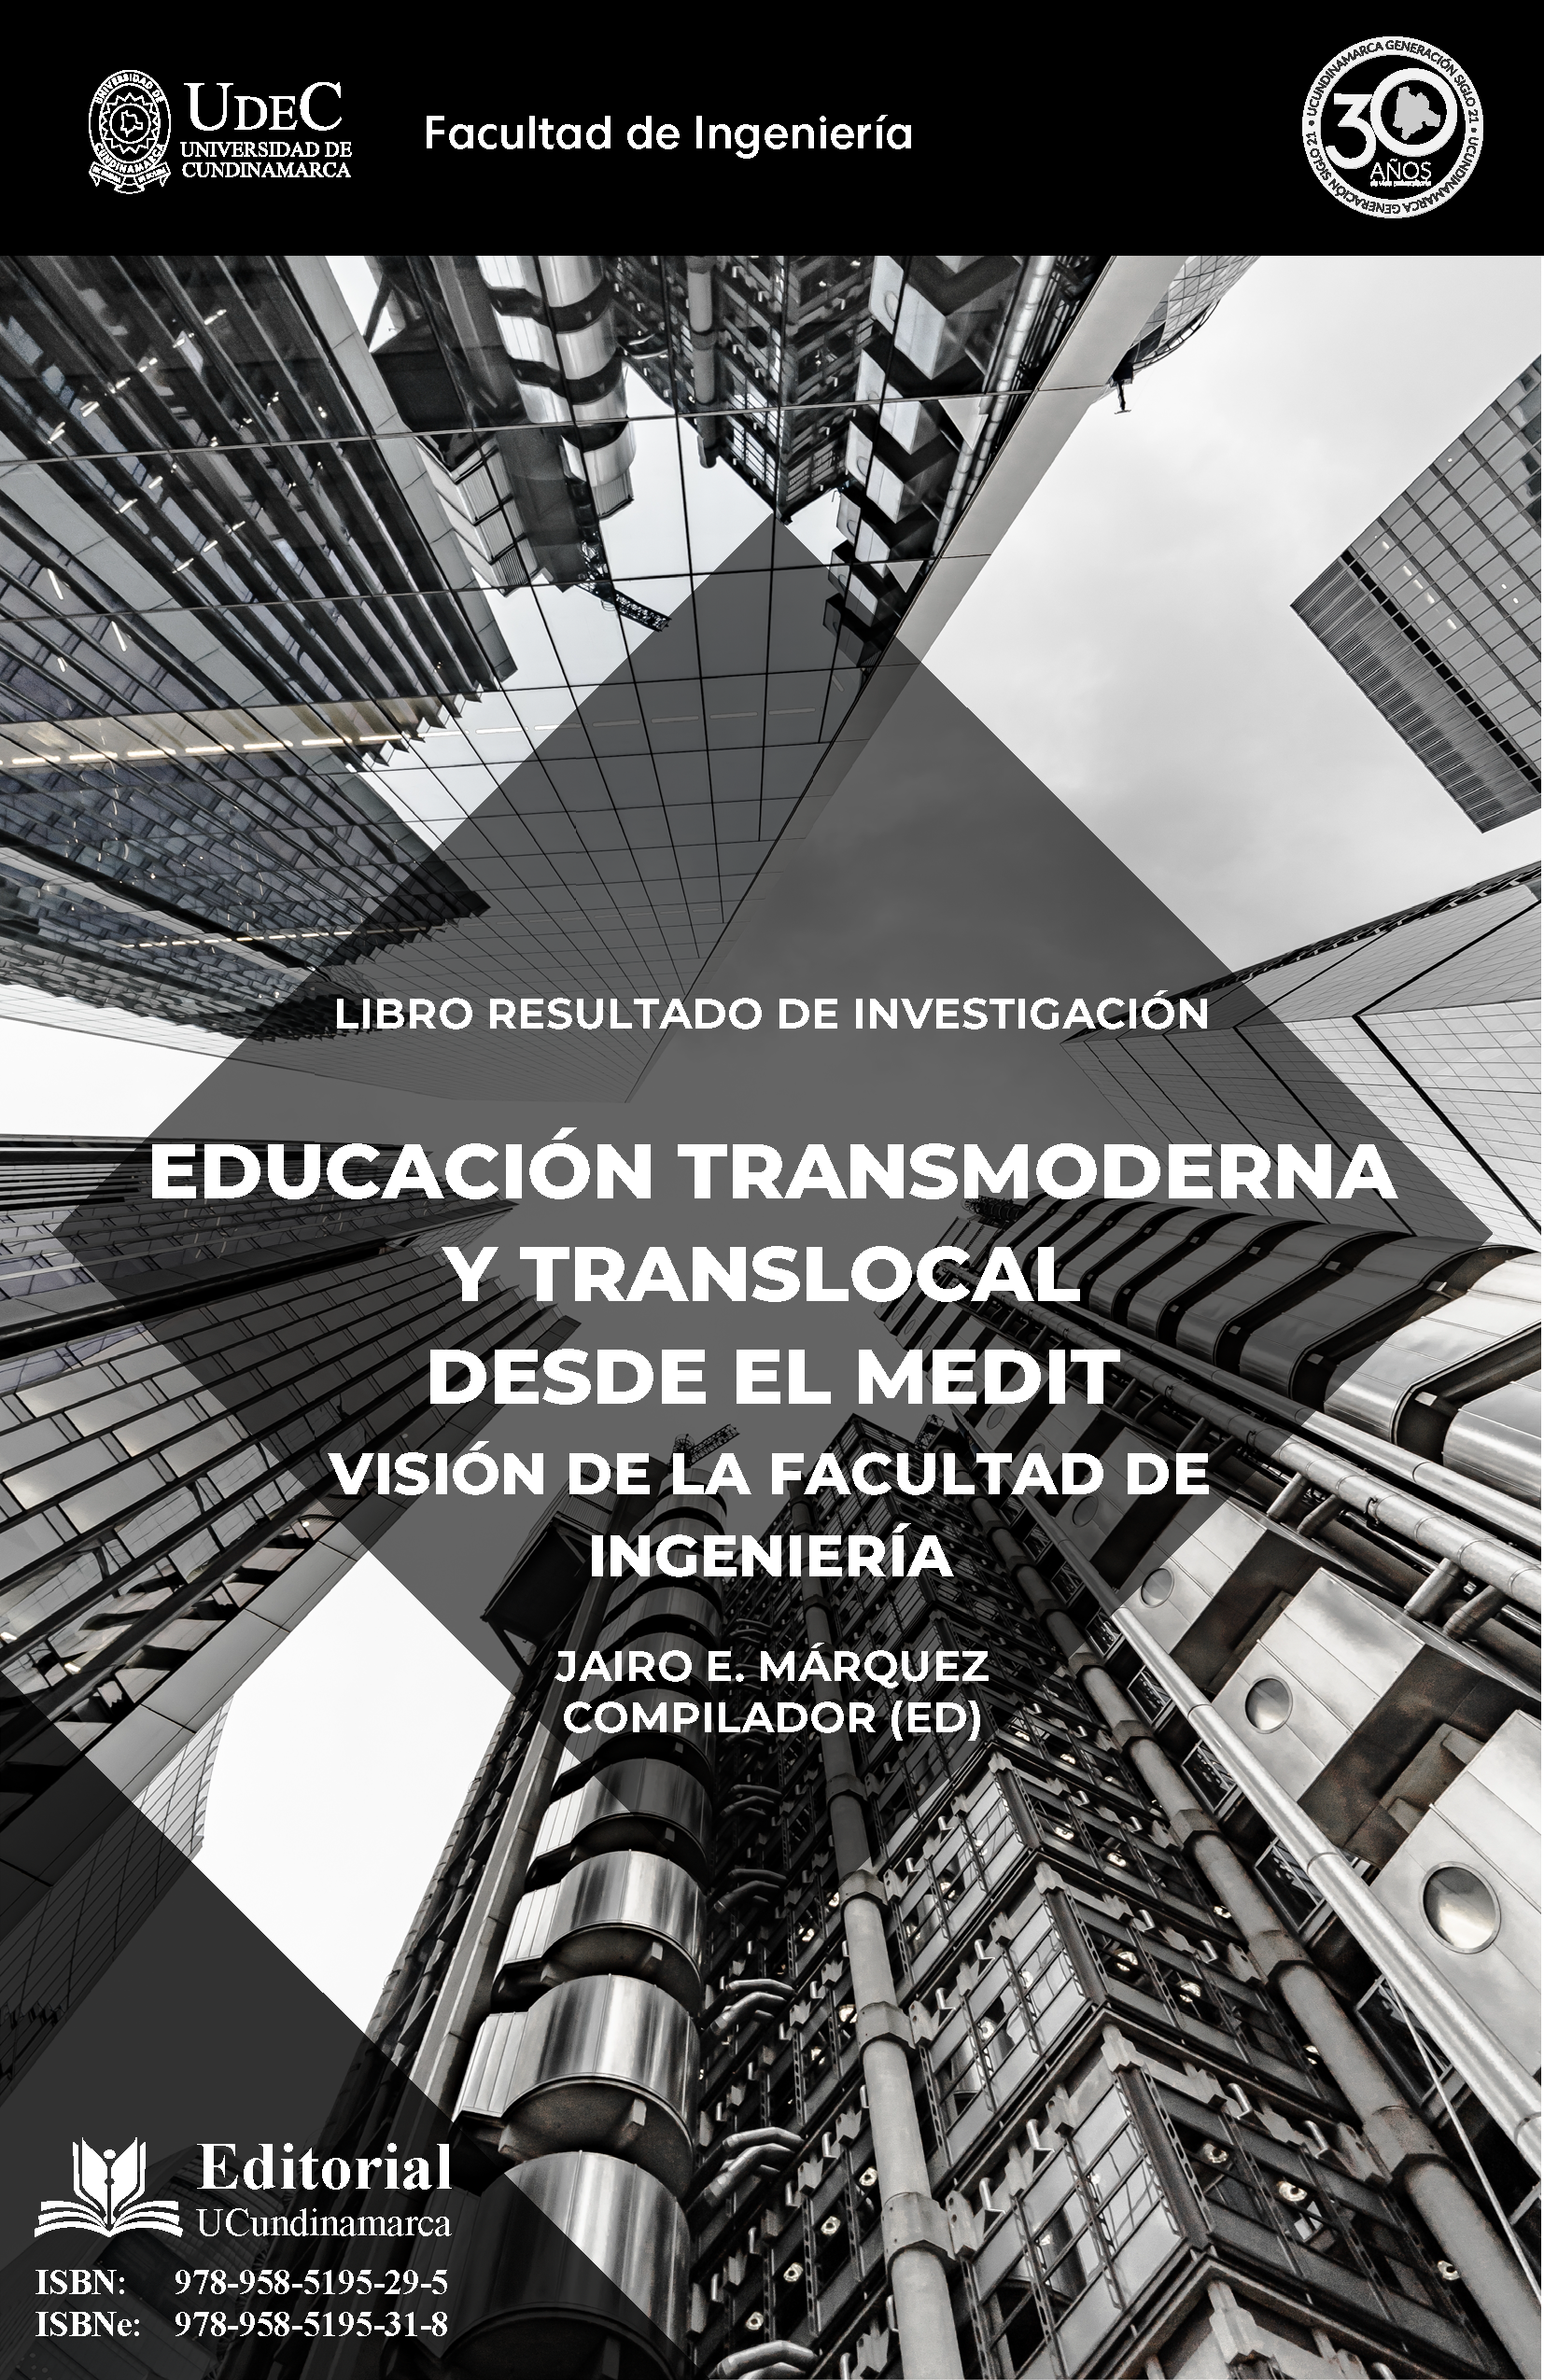 Educación Transmoderna y Translocal desde el MEDIT. Visión de la facultad de ingeniería